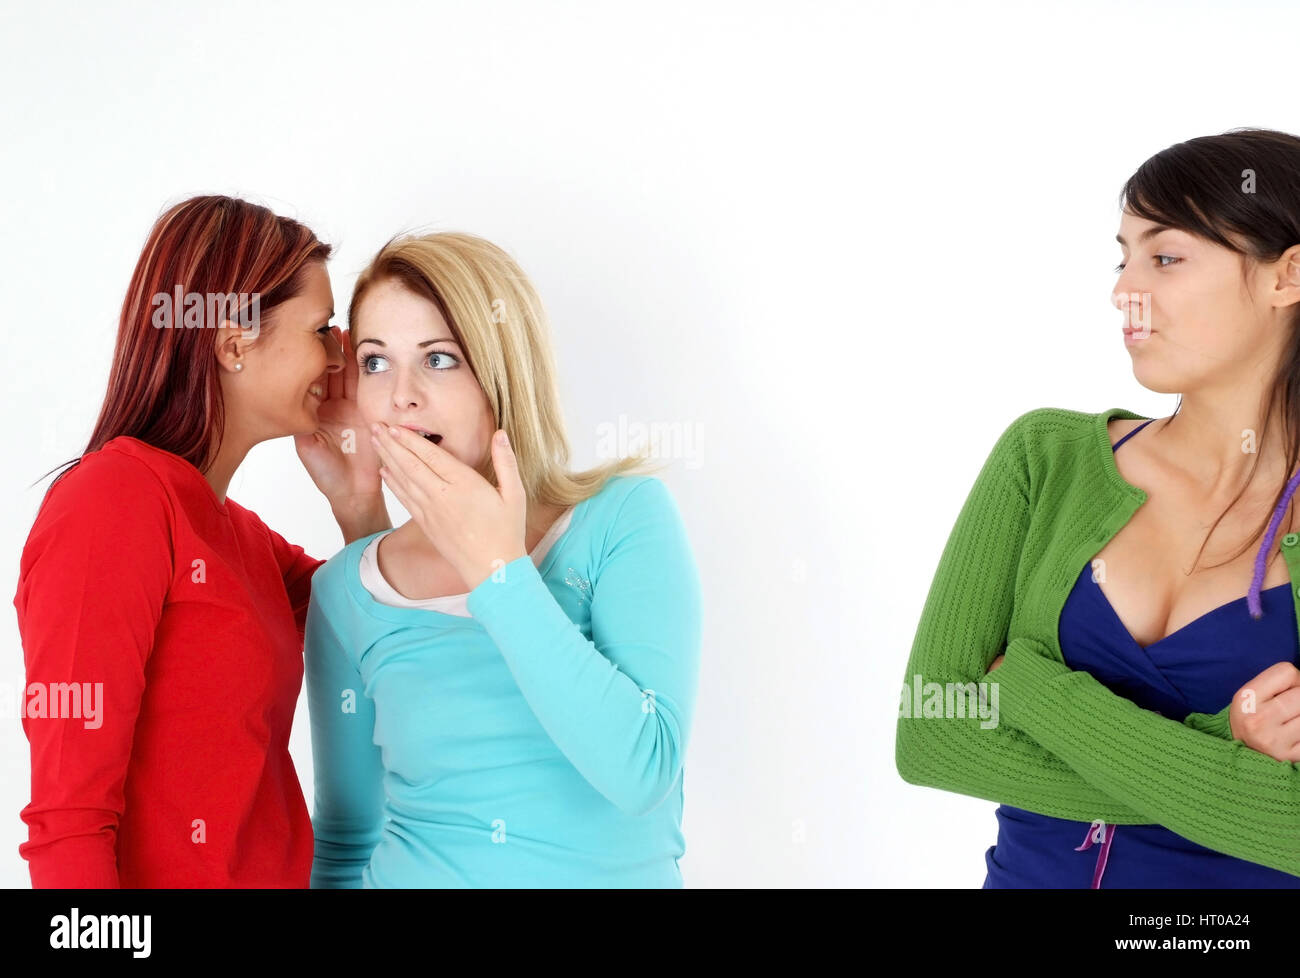 Zwei Frauen fluestern miteinander, eine Frau steht ausgeschlossen daneben - due donne bisbigliano insieme, una donna fuorigioco Foto Stock